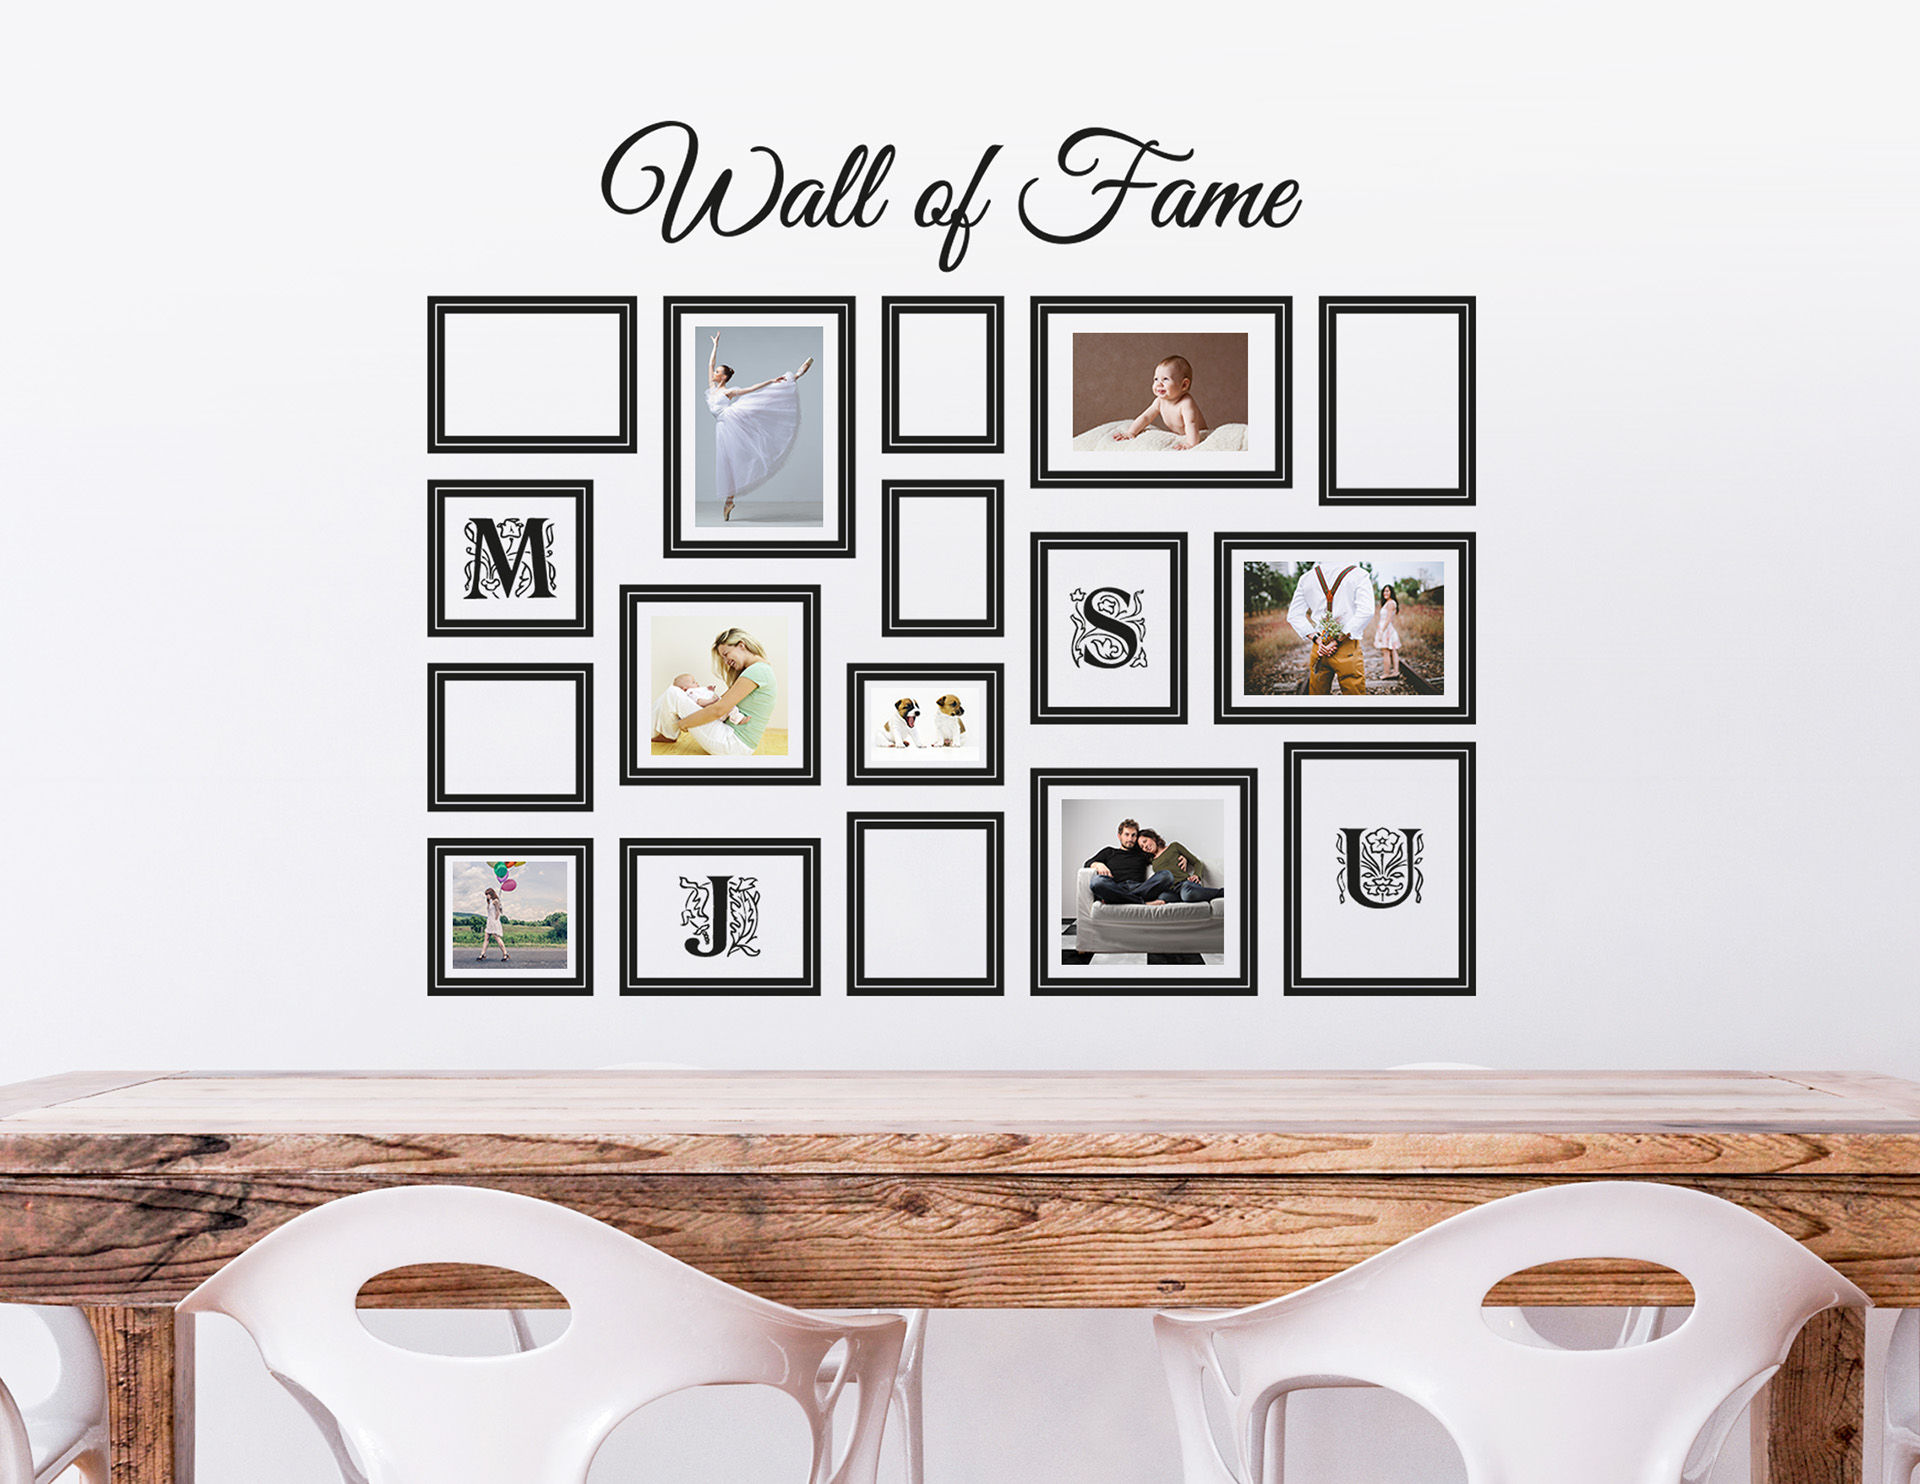 Wandtattoo Wall of Fame - mit 17 Bilderrahmen für Fotos